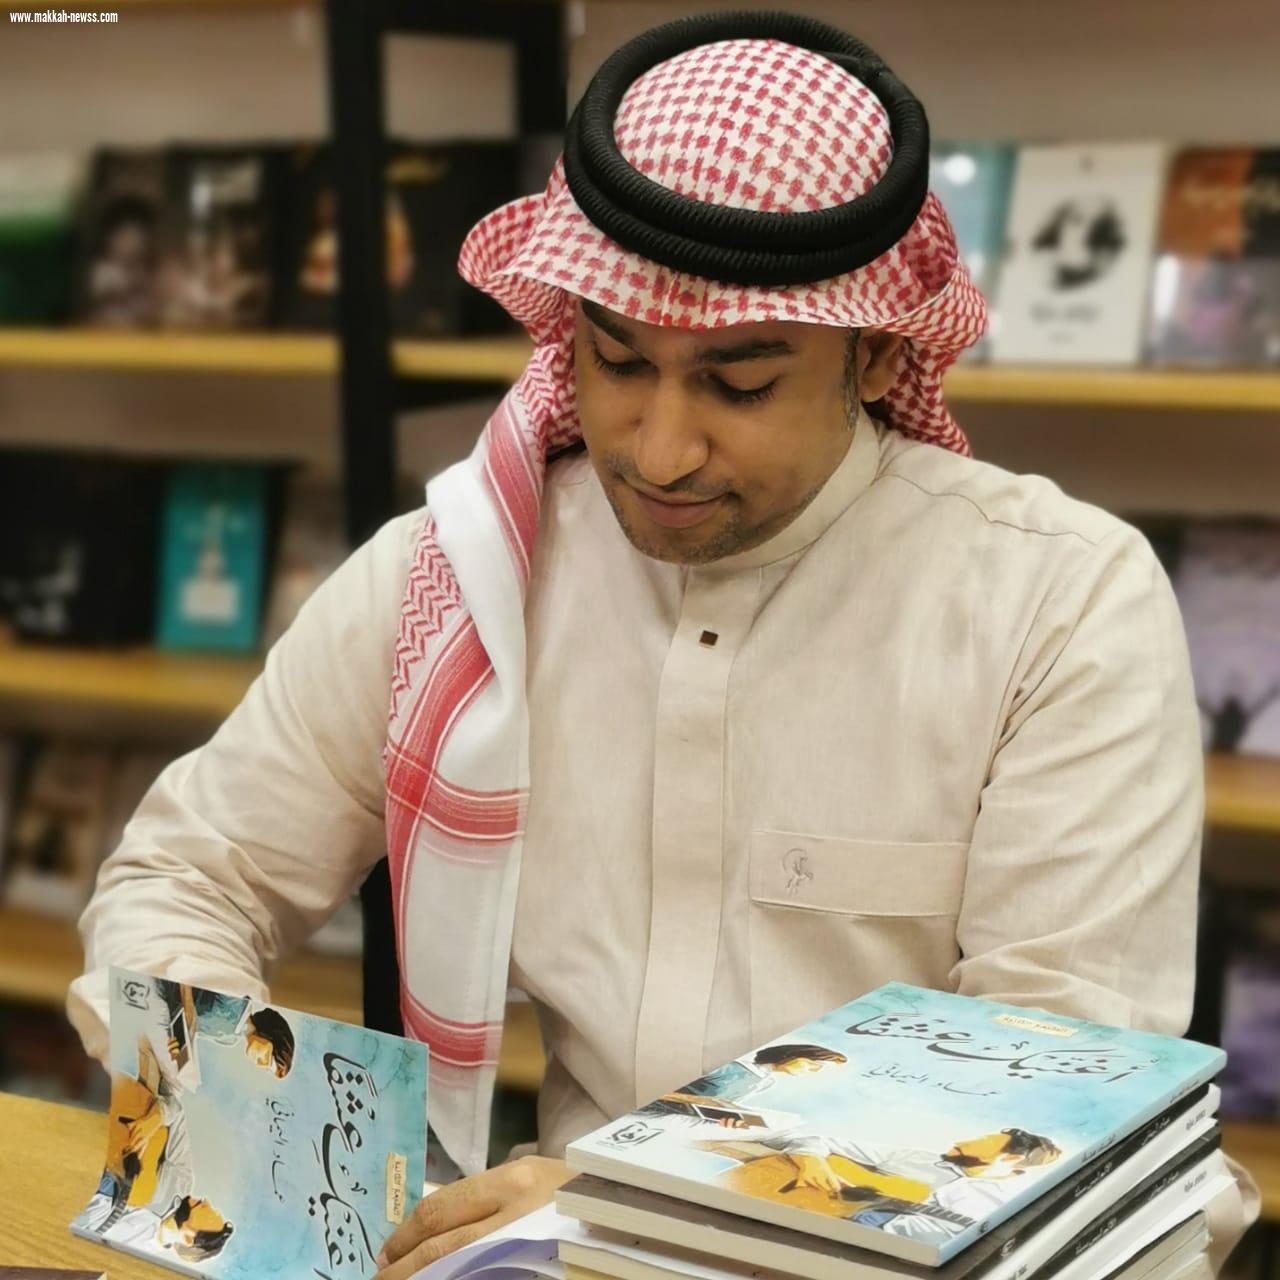 في حوار لصحيفة صوت مكة الاجتماعية مع الكاتب عماد اليماني : وسائل التواصل الاجتماعي ساهمت بشكل كبير في نشر الثقافة بشتى أنواعها .